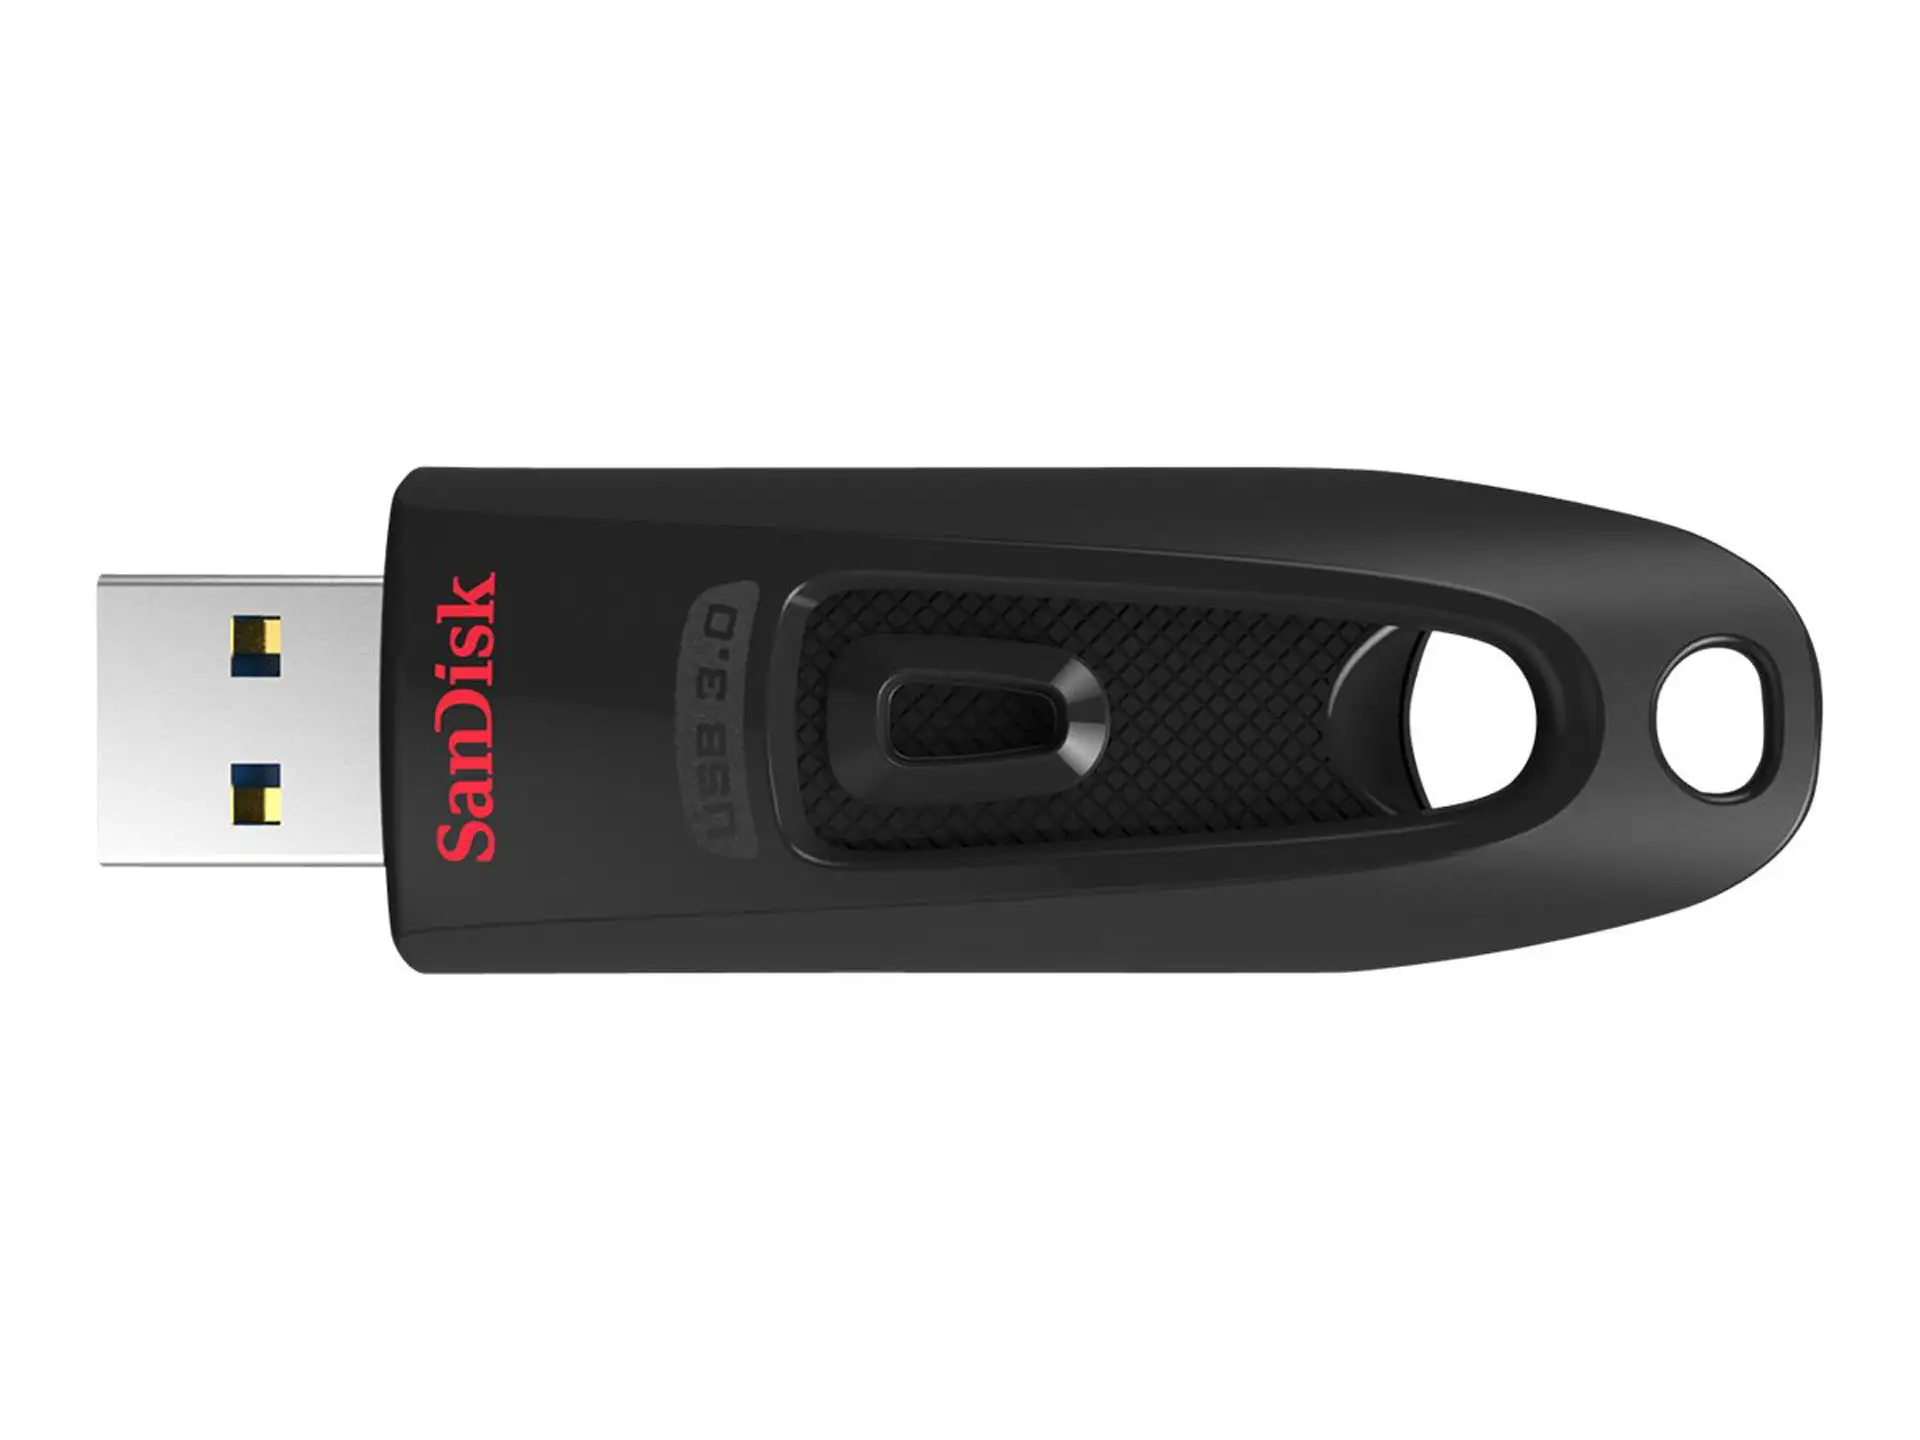 

SDCZ48-032G-U46 Flash Drive, USB, 32 GB, USB 3.0, Black/Red, Ultra Series